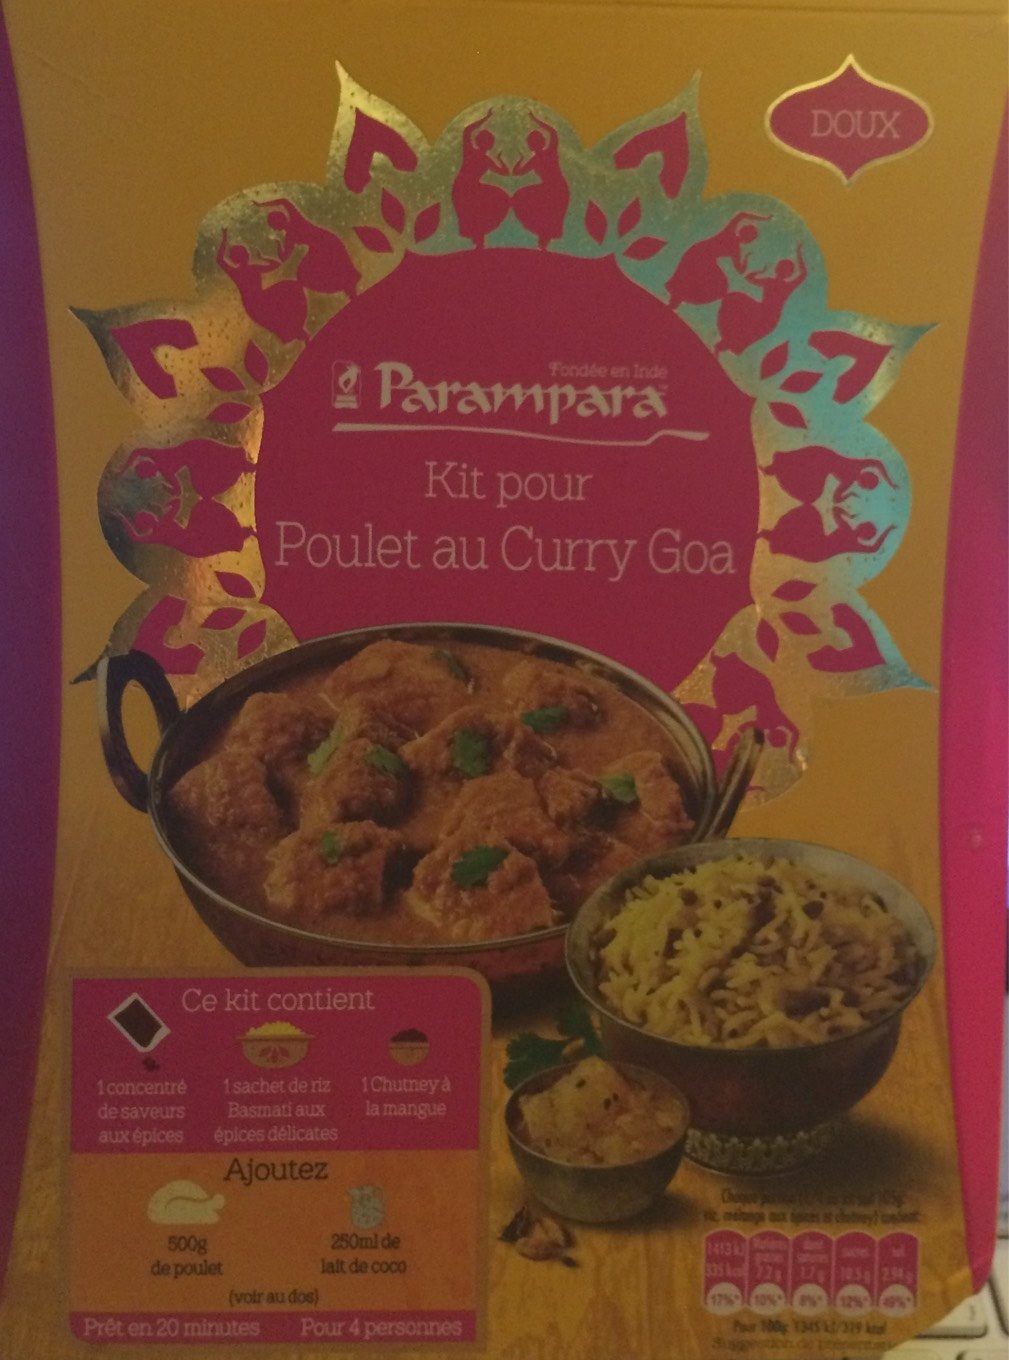 Kit pour Poulet au Curry Goa - Product - fr